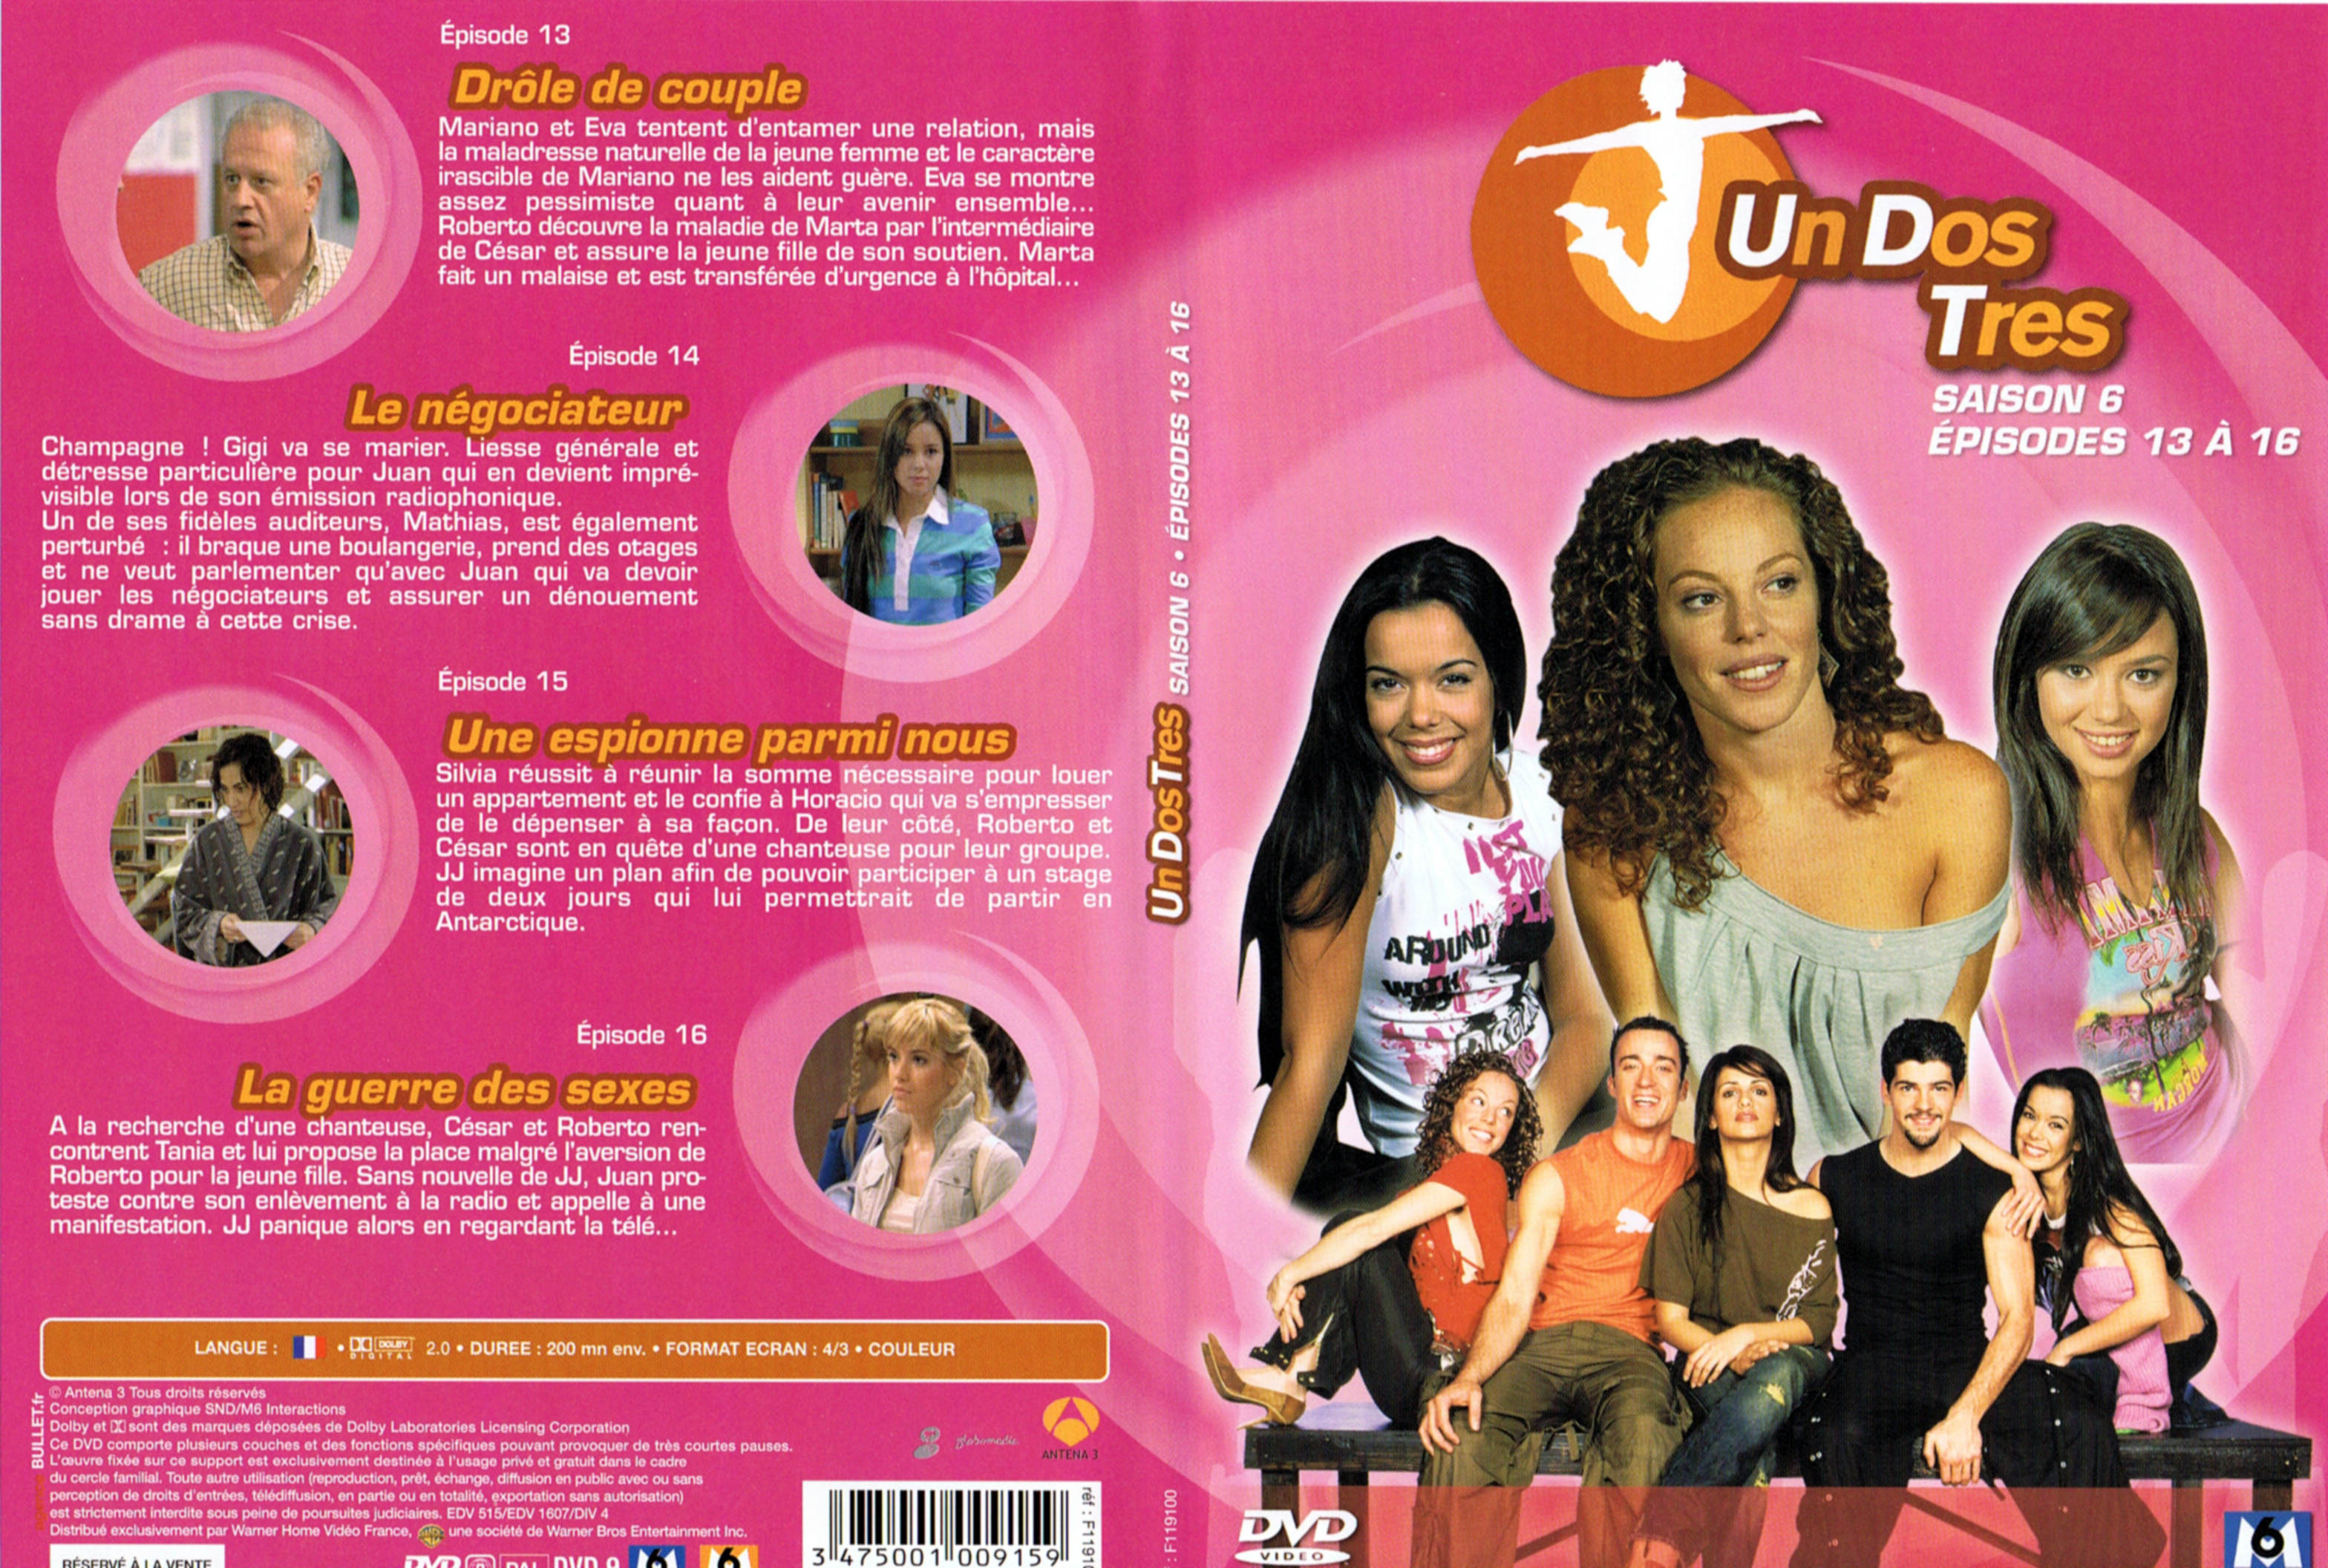 Jaquette DVD Un dos tres Saison 6 DVD 4